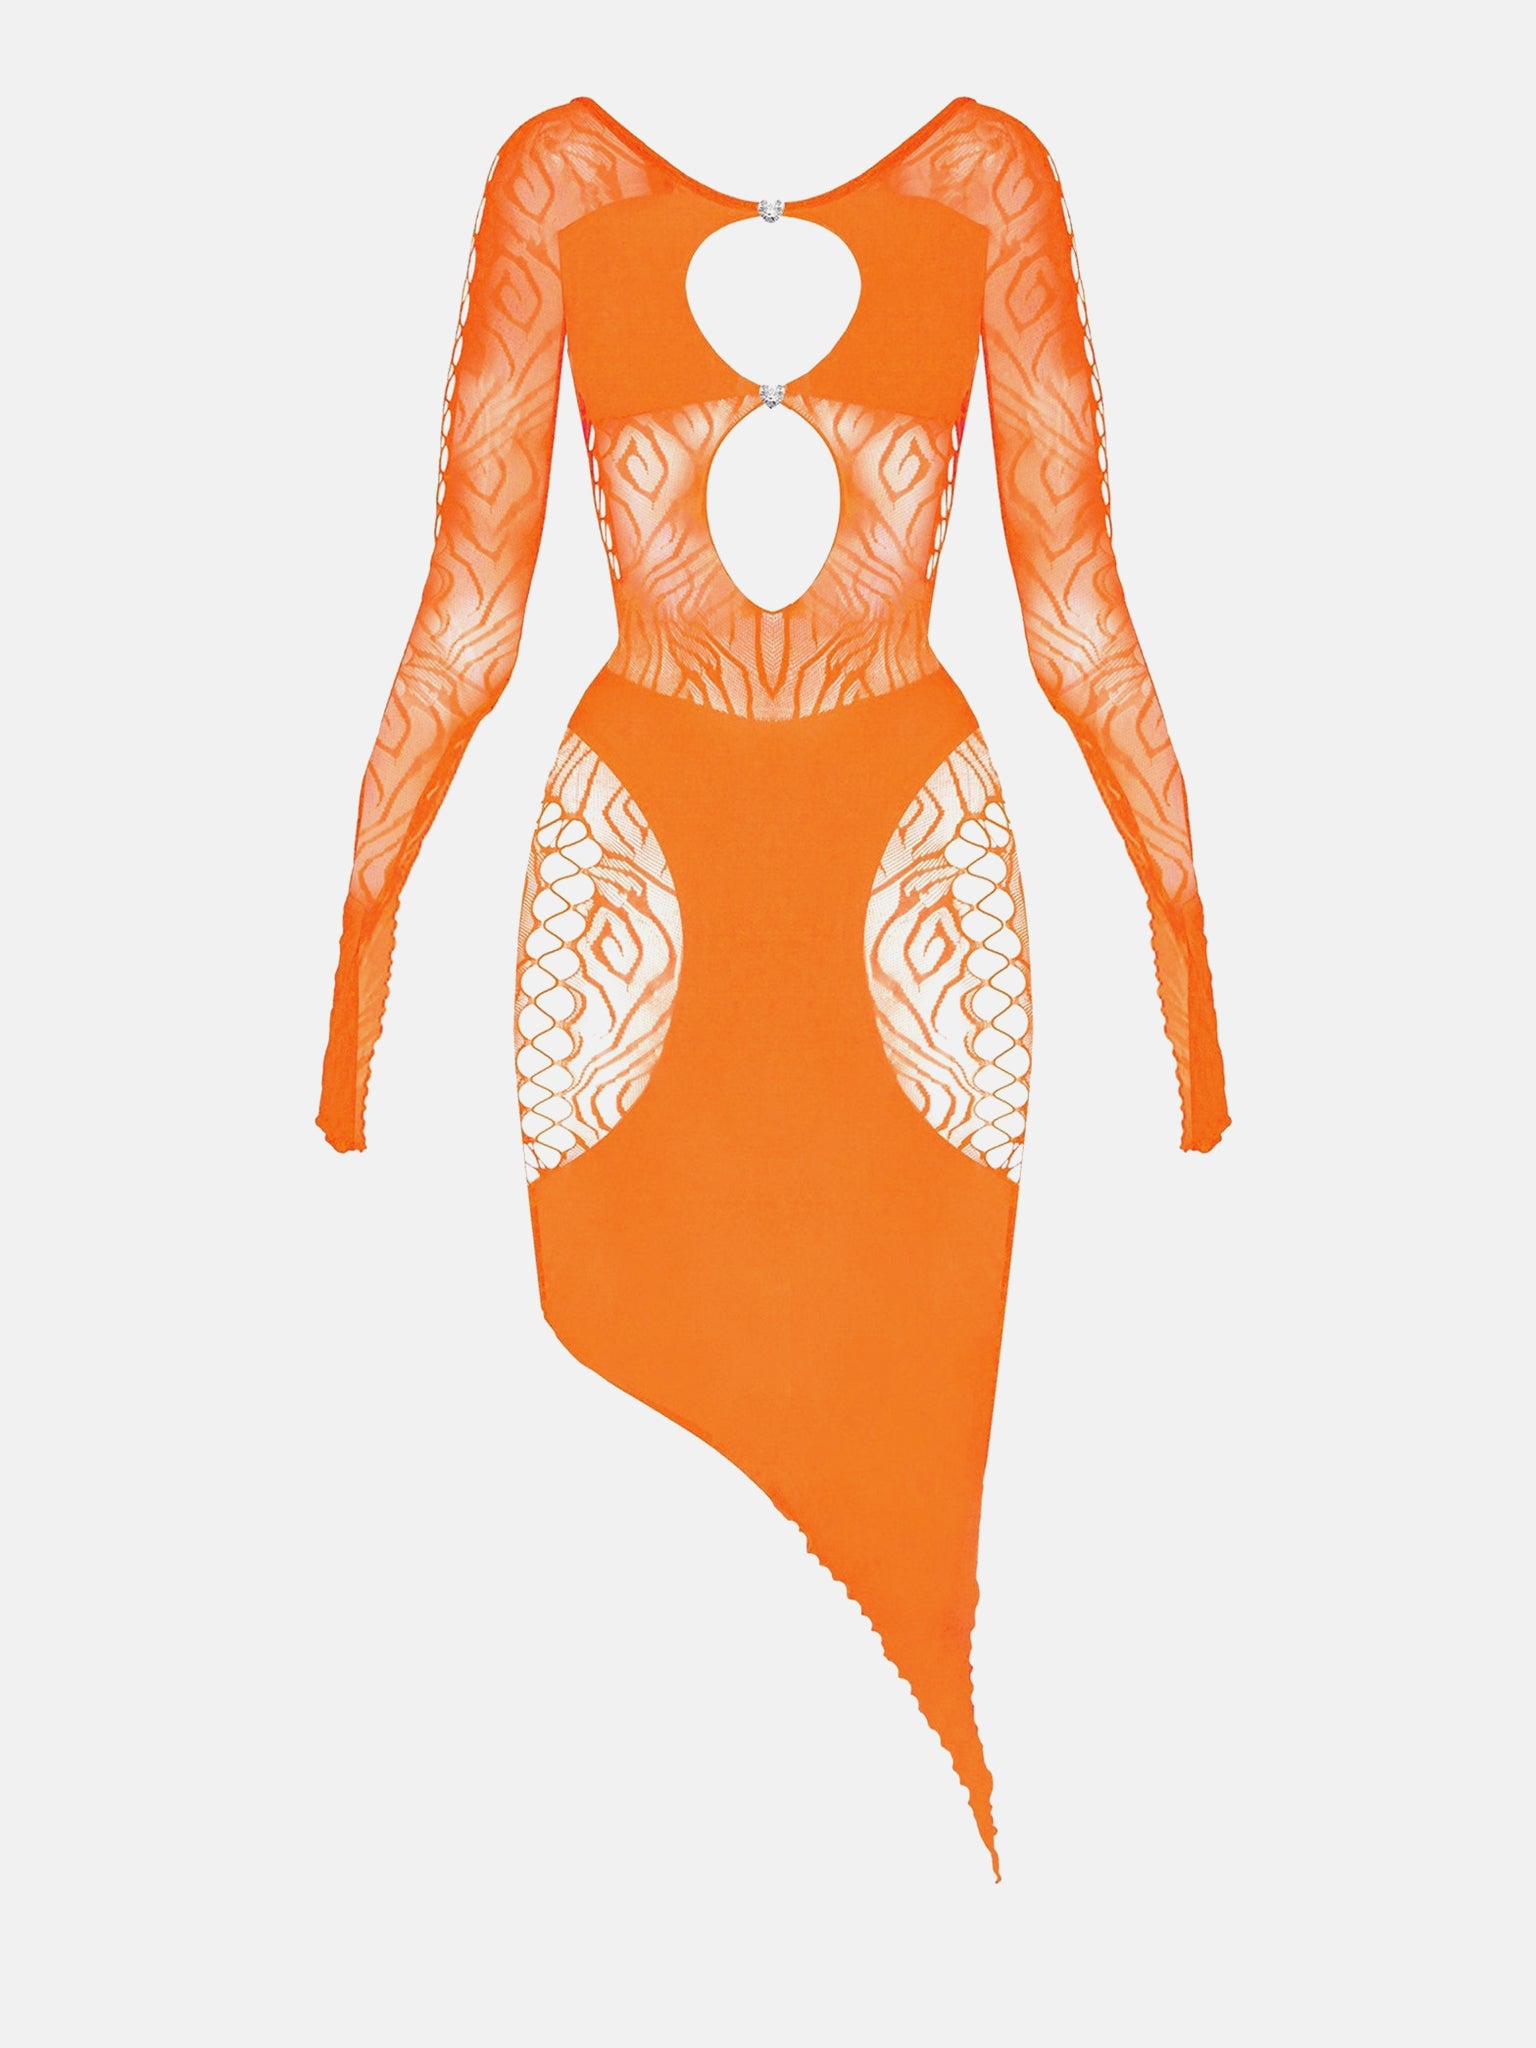 Sahara Tangerine Dress